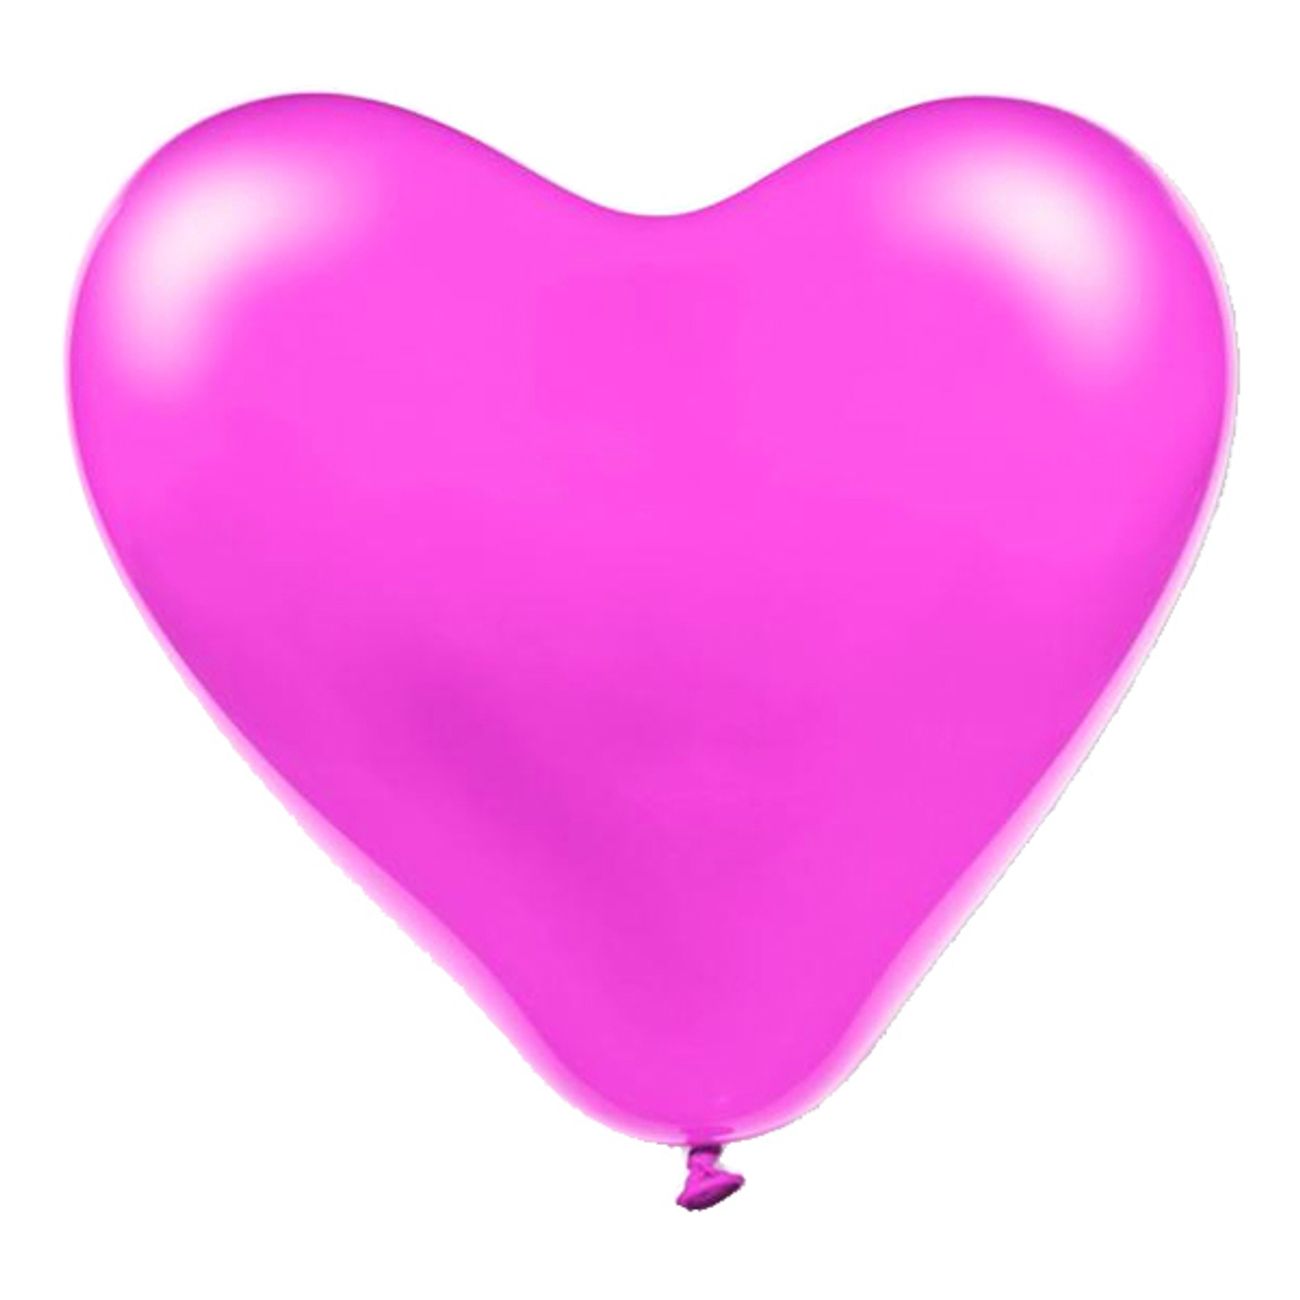 jatteballonger-hjartan-rosa-1